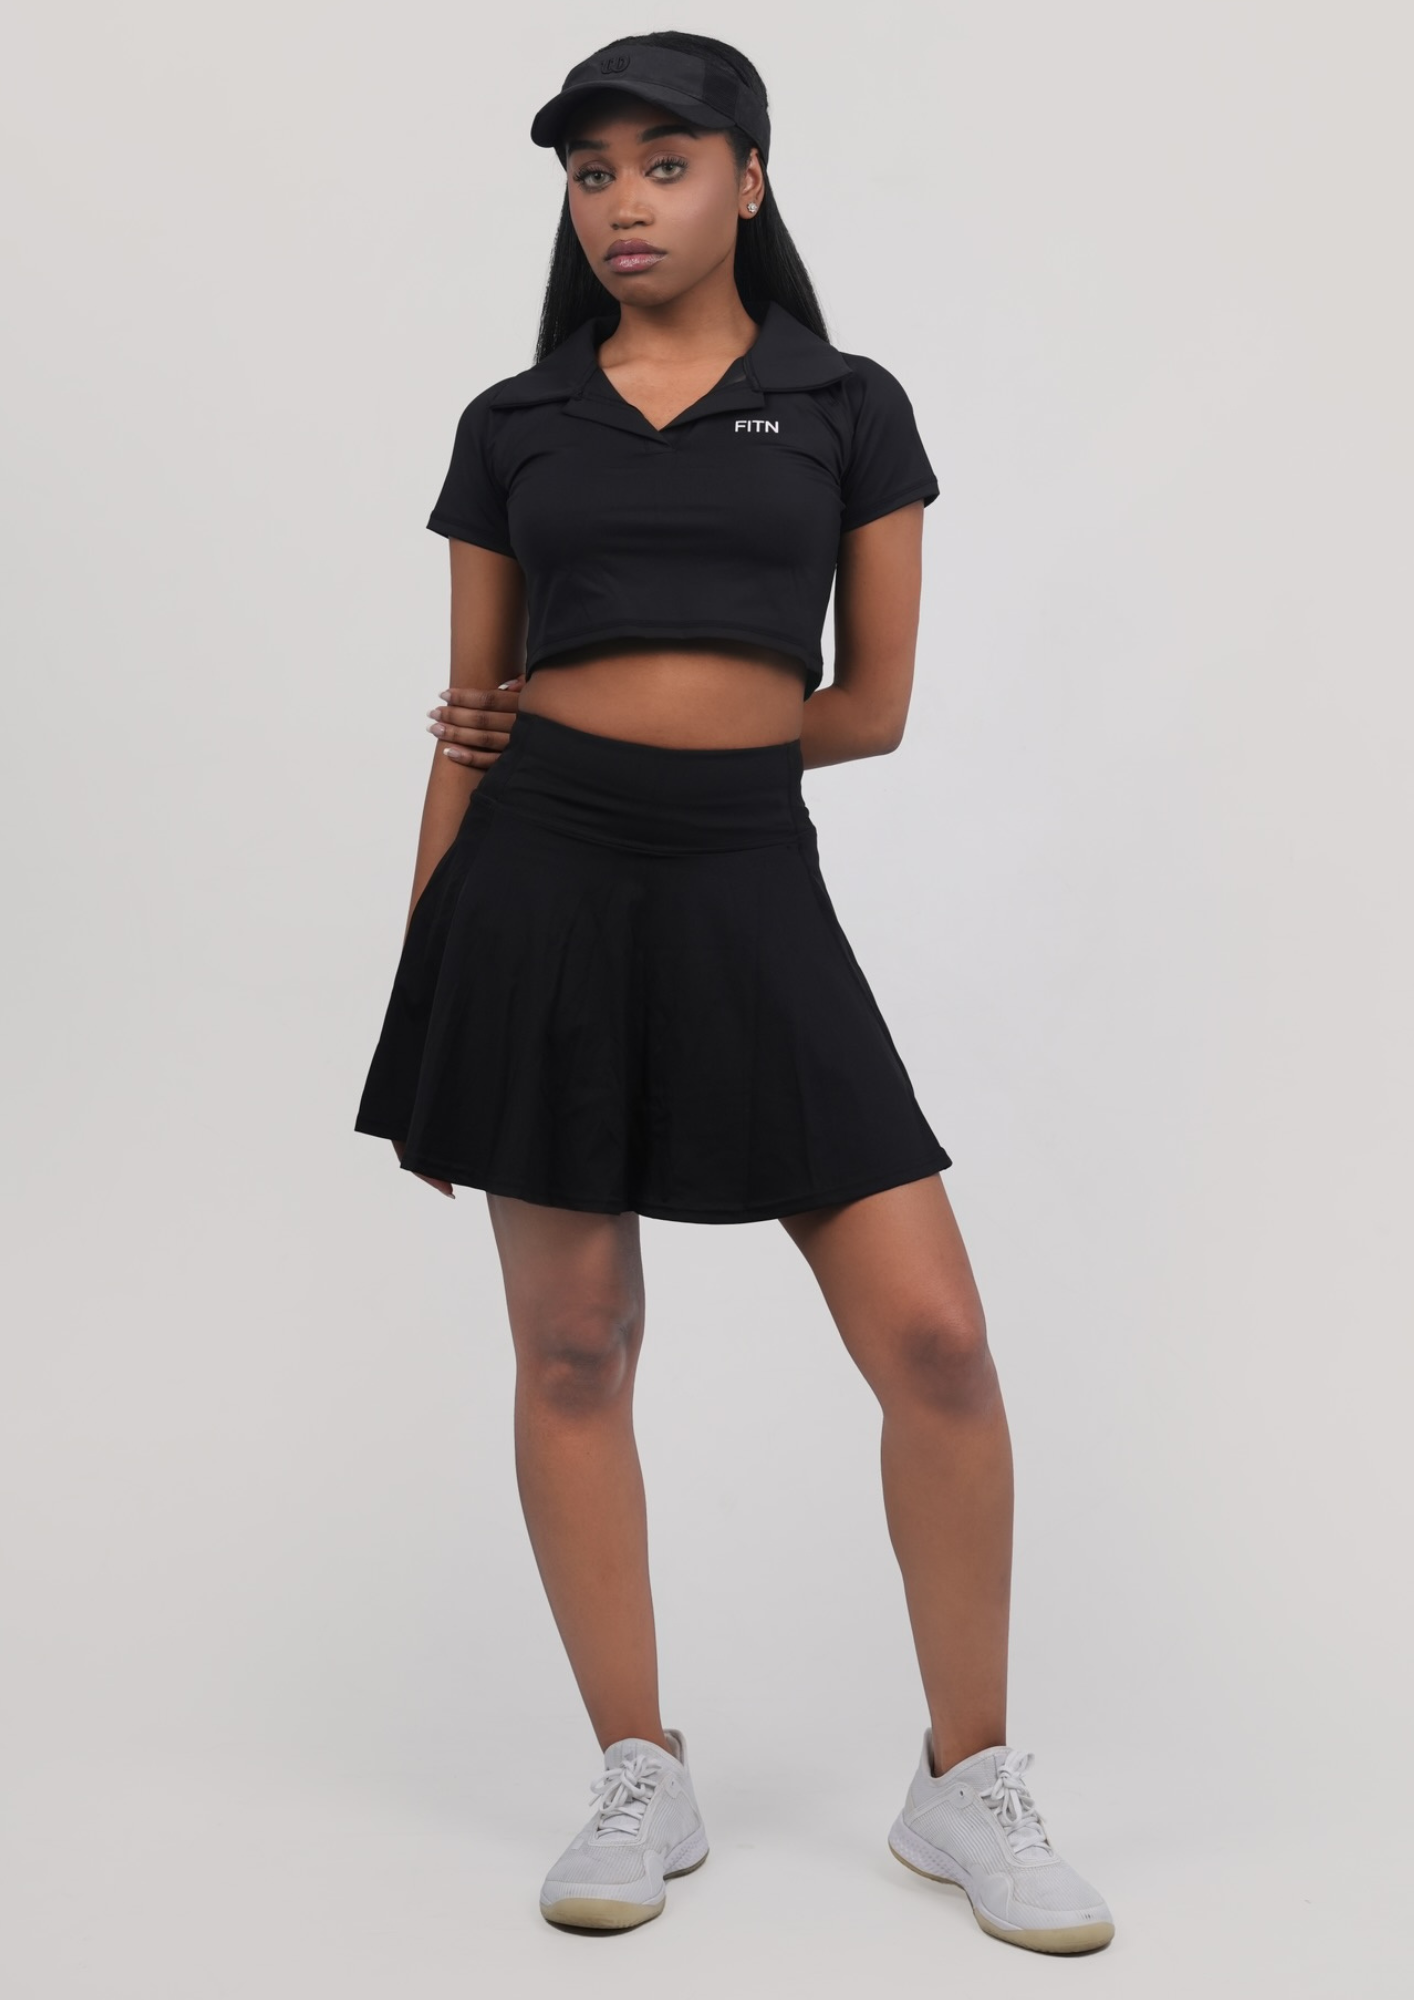 Tennis skirt black